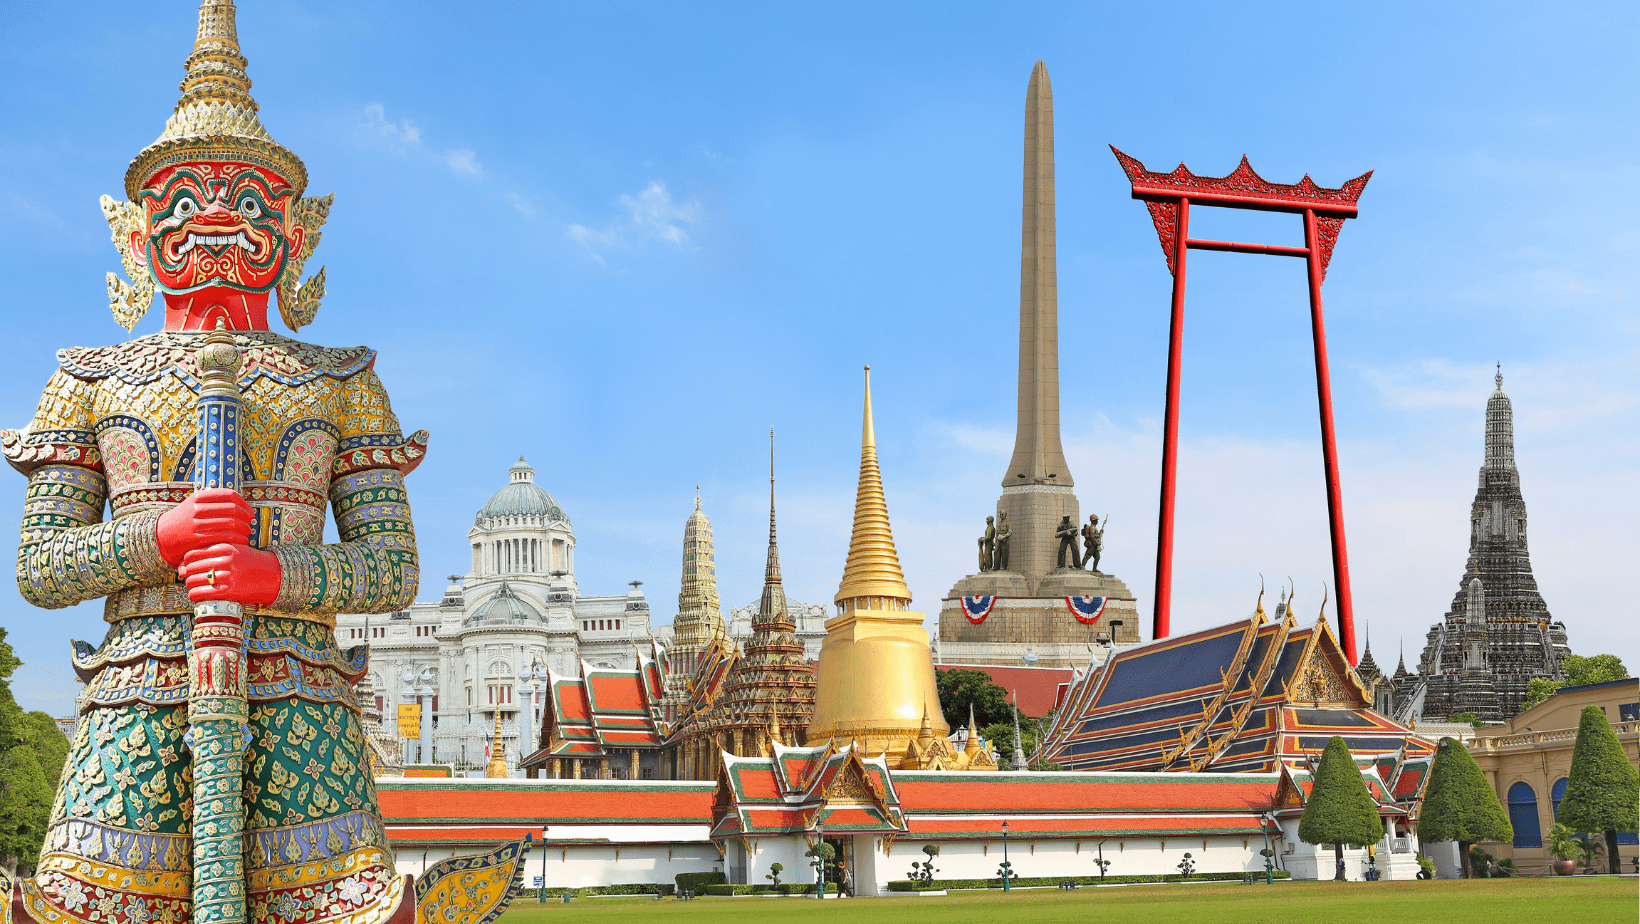 נוף של בנגקוק - פסל צבעוני לצד מקדשים של תאילנד